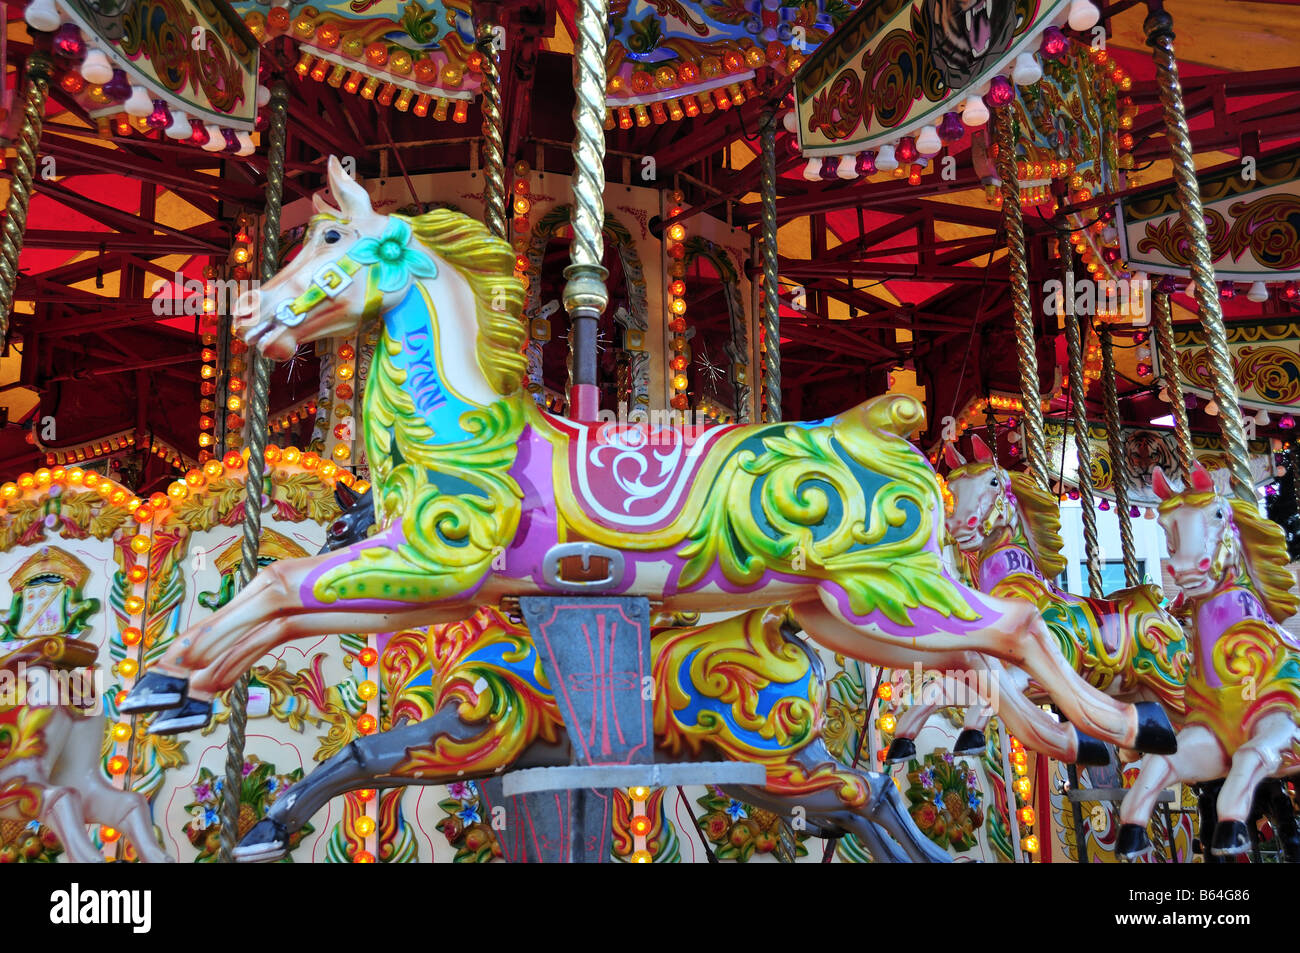 Cheval carrousel de Foire aux couleurs vives Banque D'Images